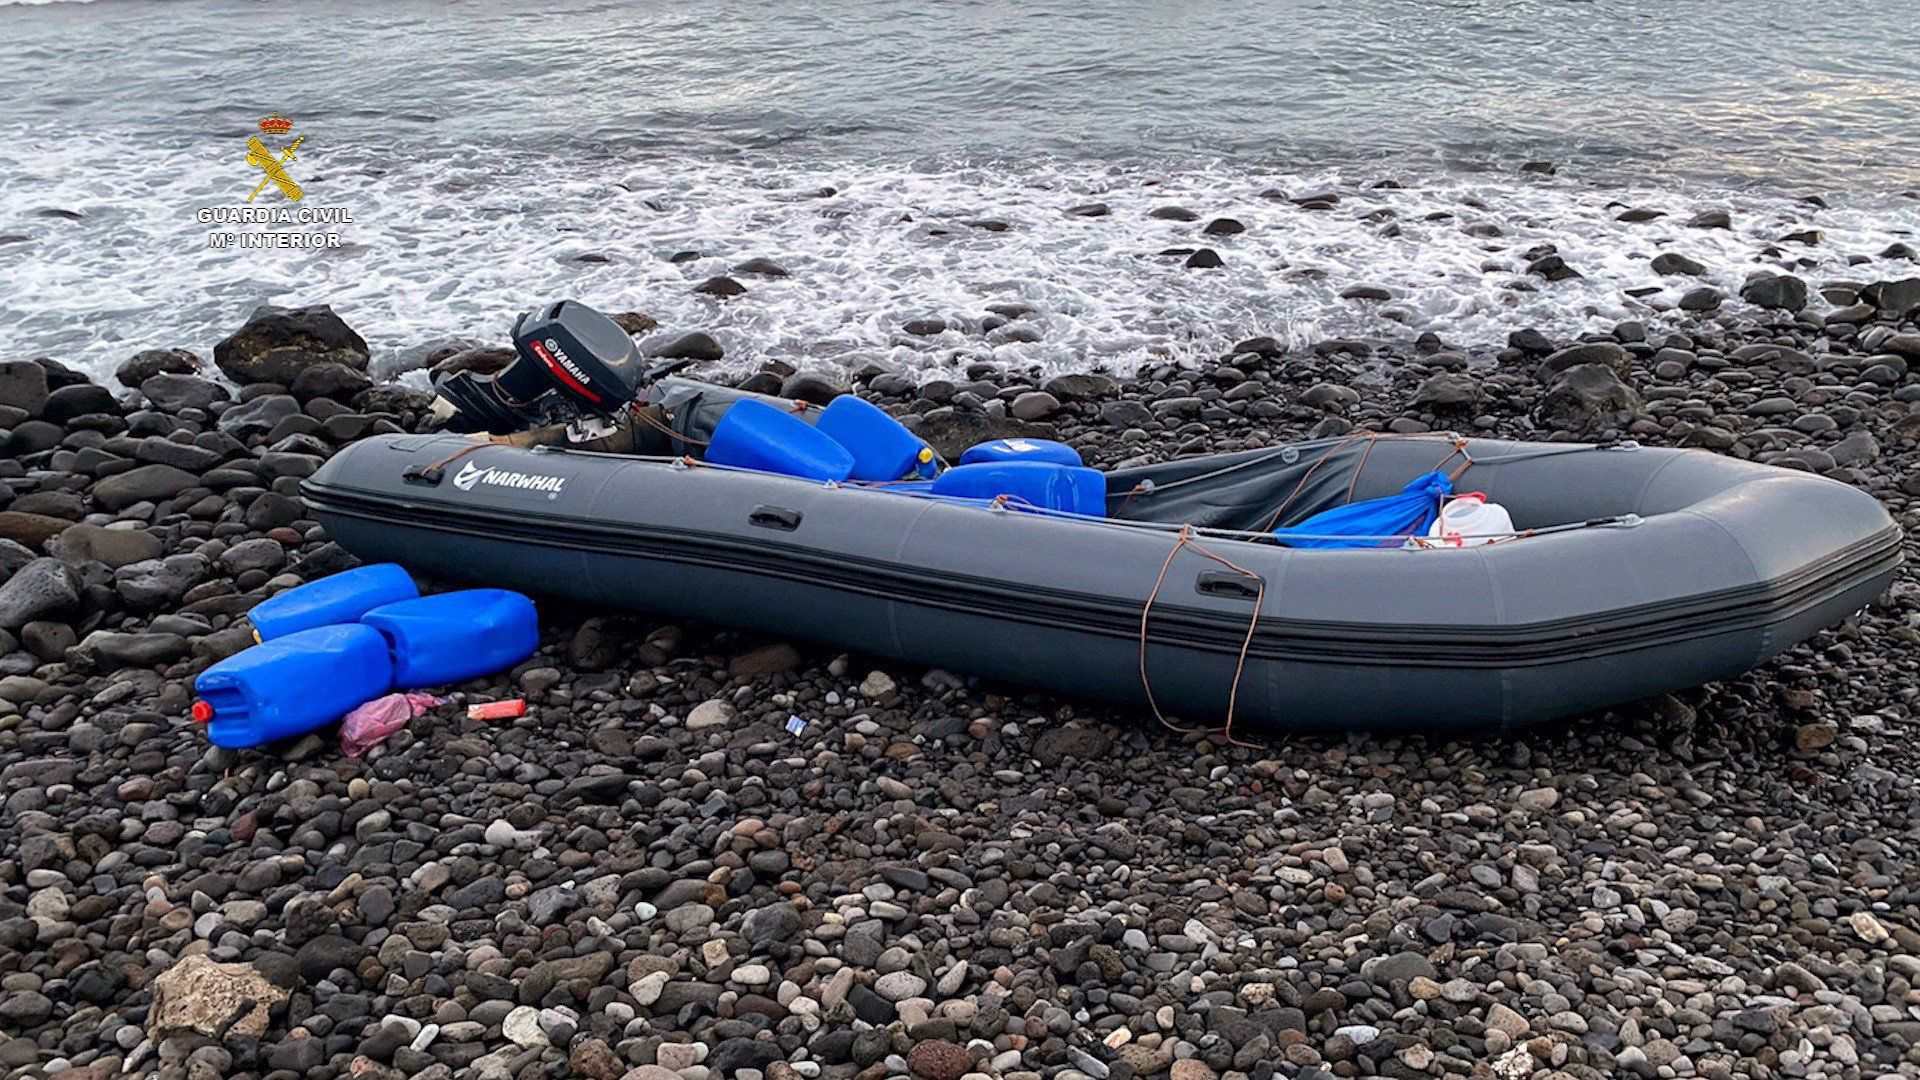 Detenidas 7 personas tras ser sorprendendidas desembarcando 51 fardos de hachís en Playa de Vargas (Agüimes)